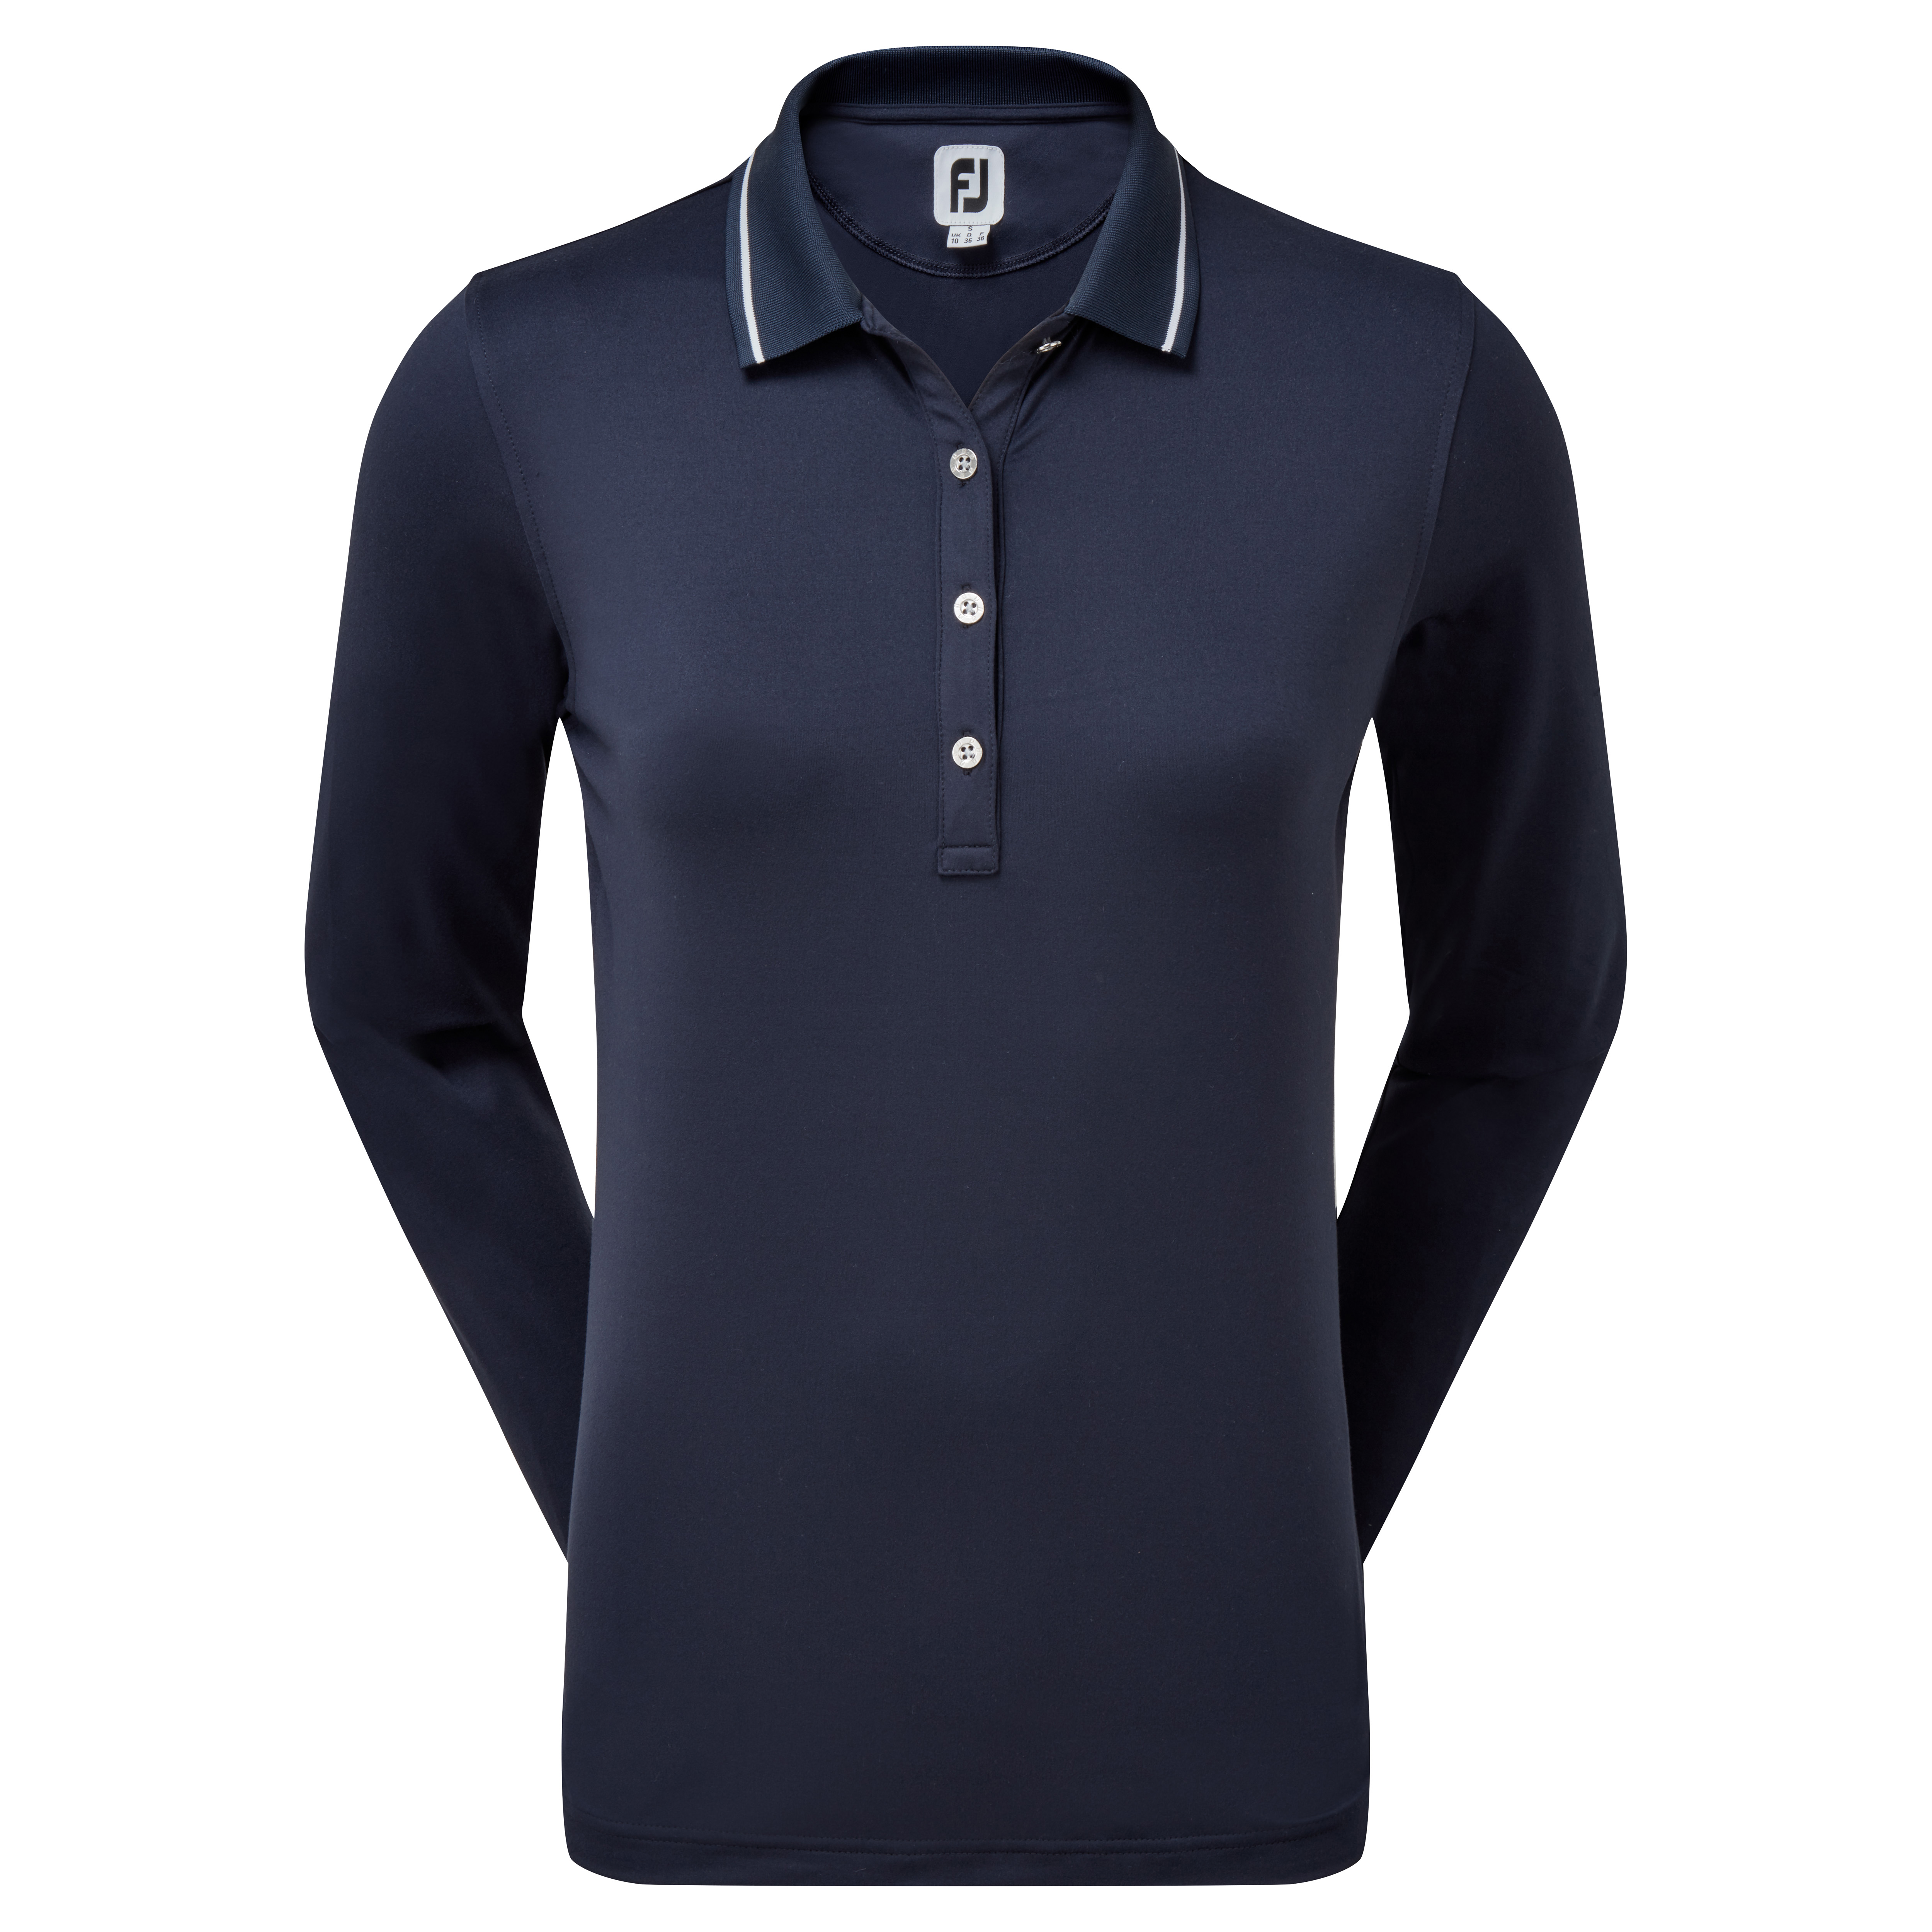 FootJoy Thermal dámské golfové triko s dlouhým rukávem, tmavě modré, vel. M